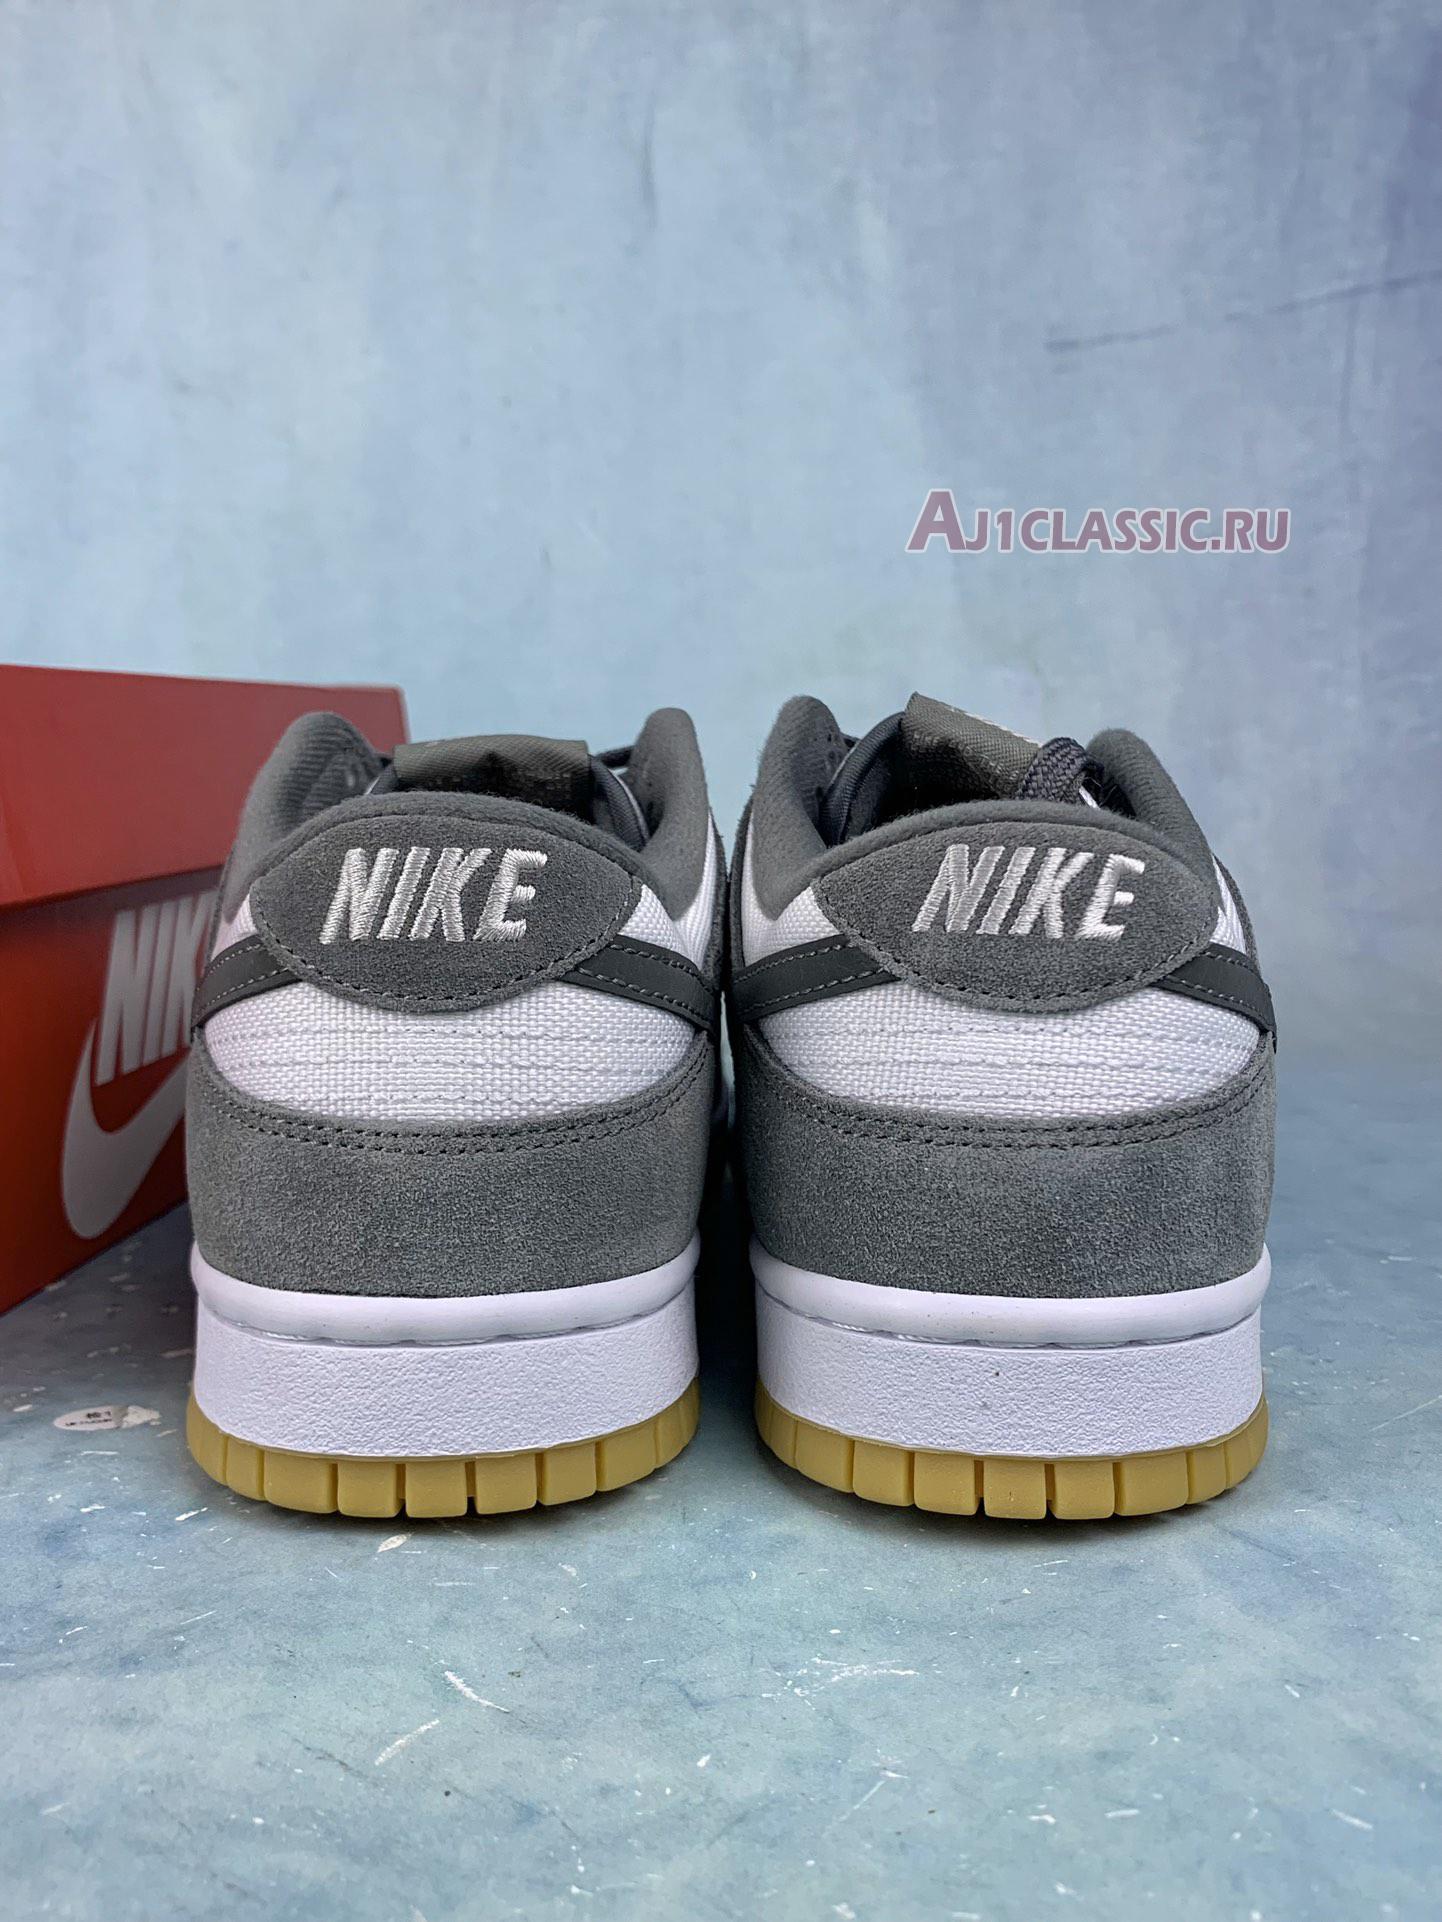 Nike Dunk Low "Smoke Grey Gum" FV0389-100